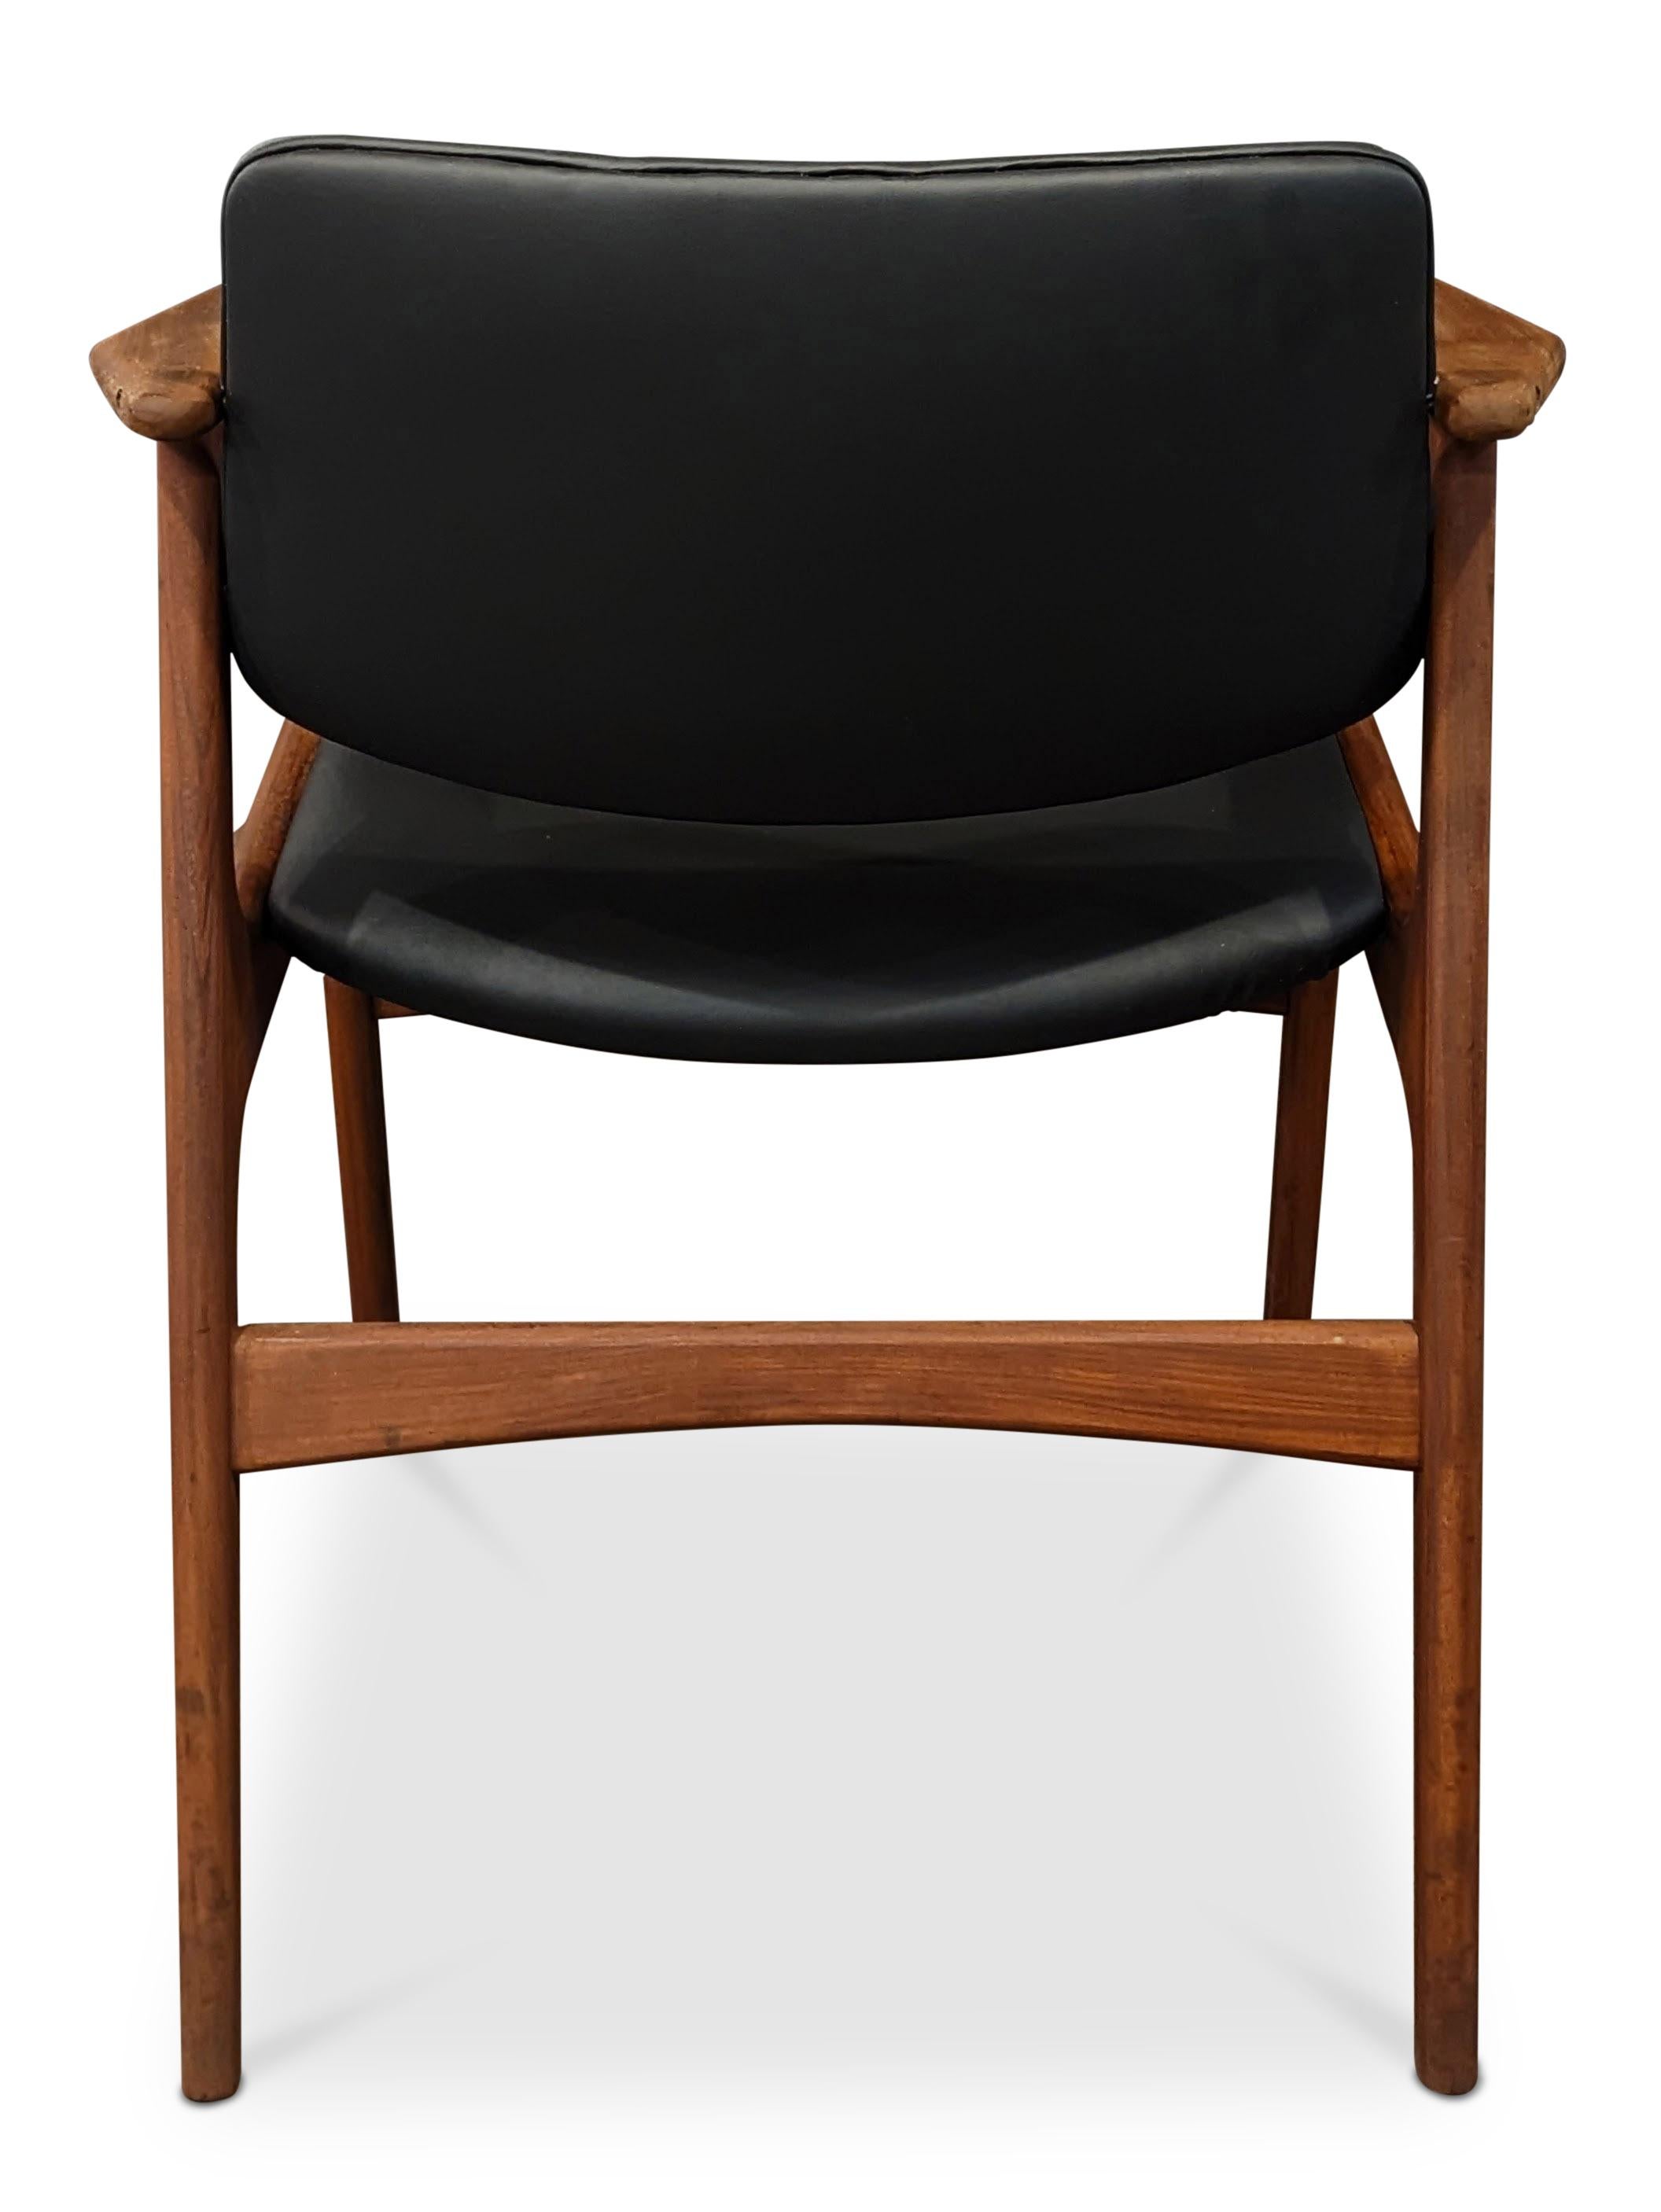 4 Arne Vodder Teak Arm Chairs - 072312 Vintage Danish Mid Century 2